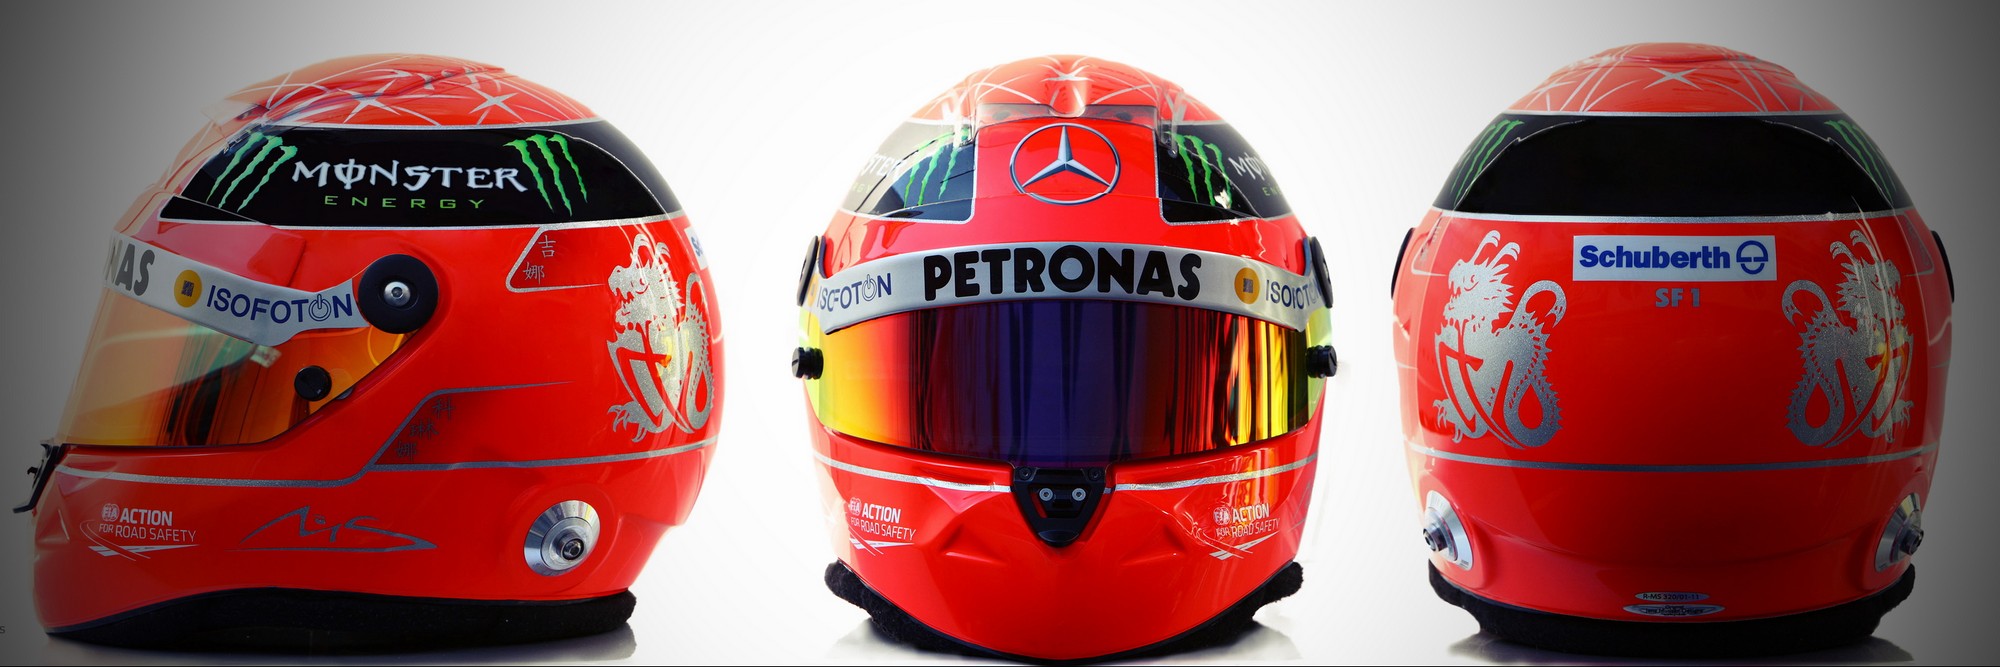 Шлем Михаэля Шумахера на сезон 2012 года | 2012 helmet of Michael Schumacher